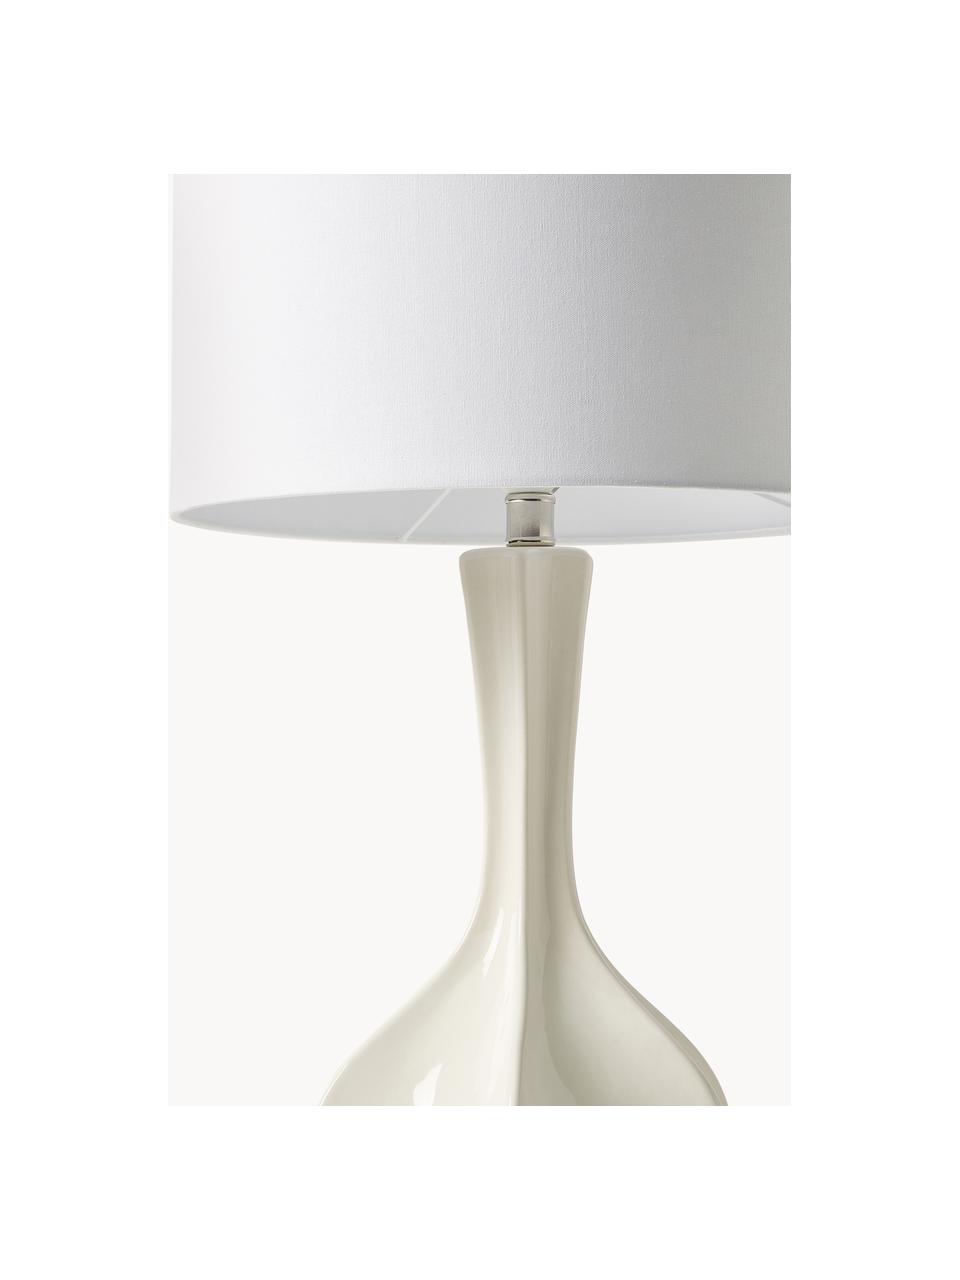 Große Tischlampe Kash mit Keramikfuß, Lampenschirm: Leinen, Lampenfuß: Keramik, Weiß, Off White, Ø 38 x H 68 cm